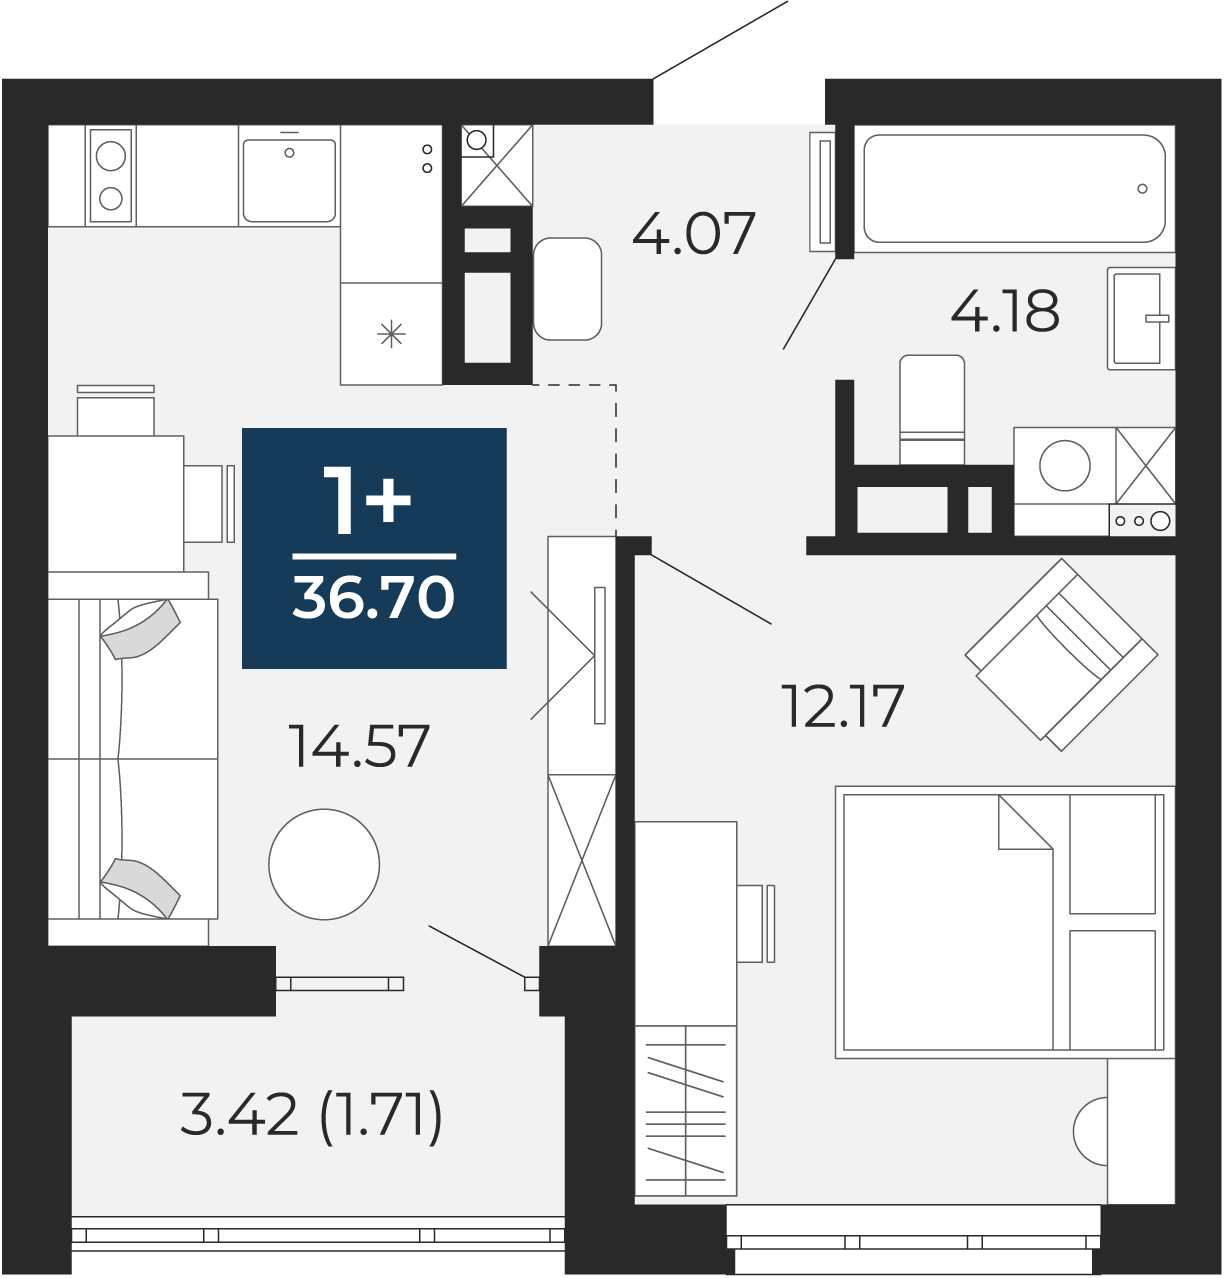 Квартира № 48, 1-комнатная, 36.7 кв. м, 7 этаж